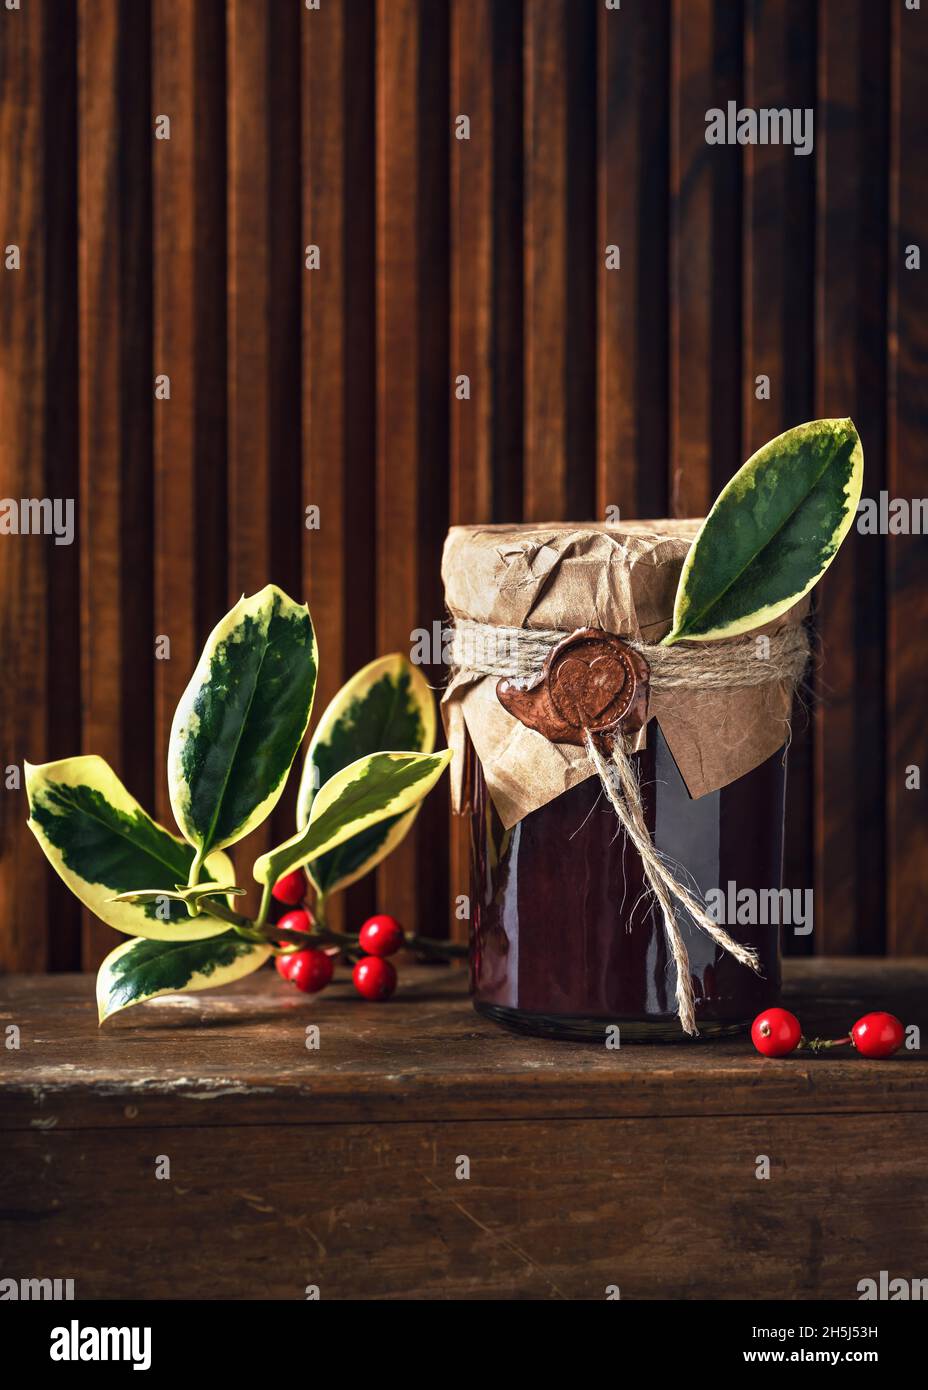 Confiture de fruits maison dans un pot décoré avec du papier de grunge, du sceau de cire et des feuilles vertes de houx comme petit cadeau de Noël. Concept d'idées de cadeau de cuisine Banque D'Images